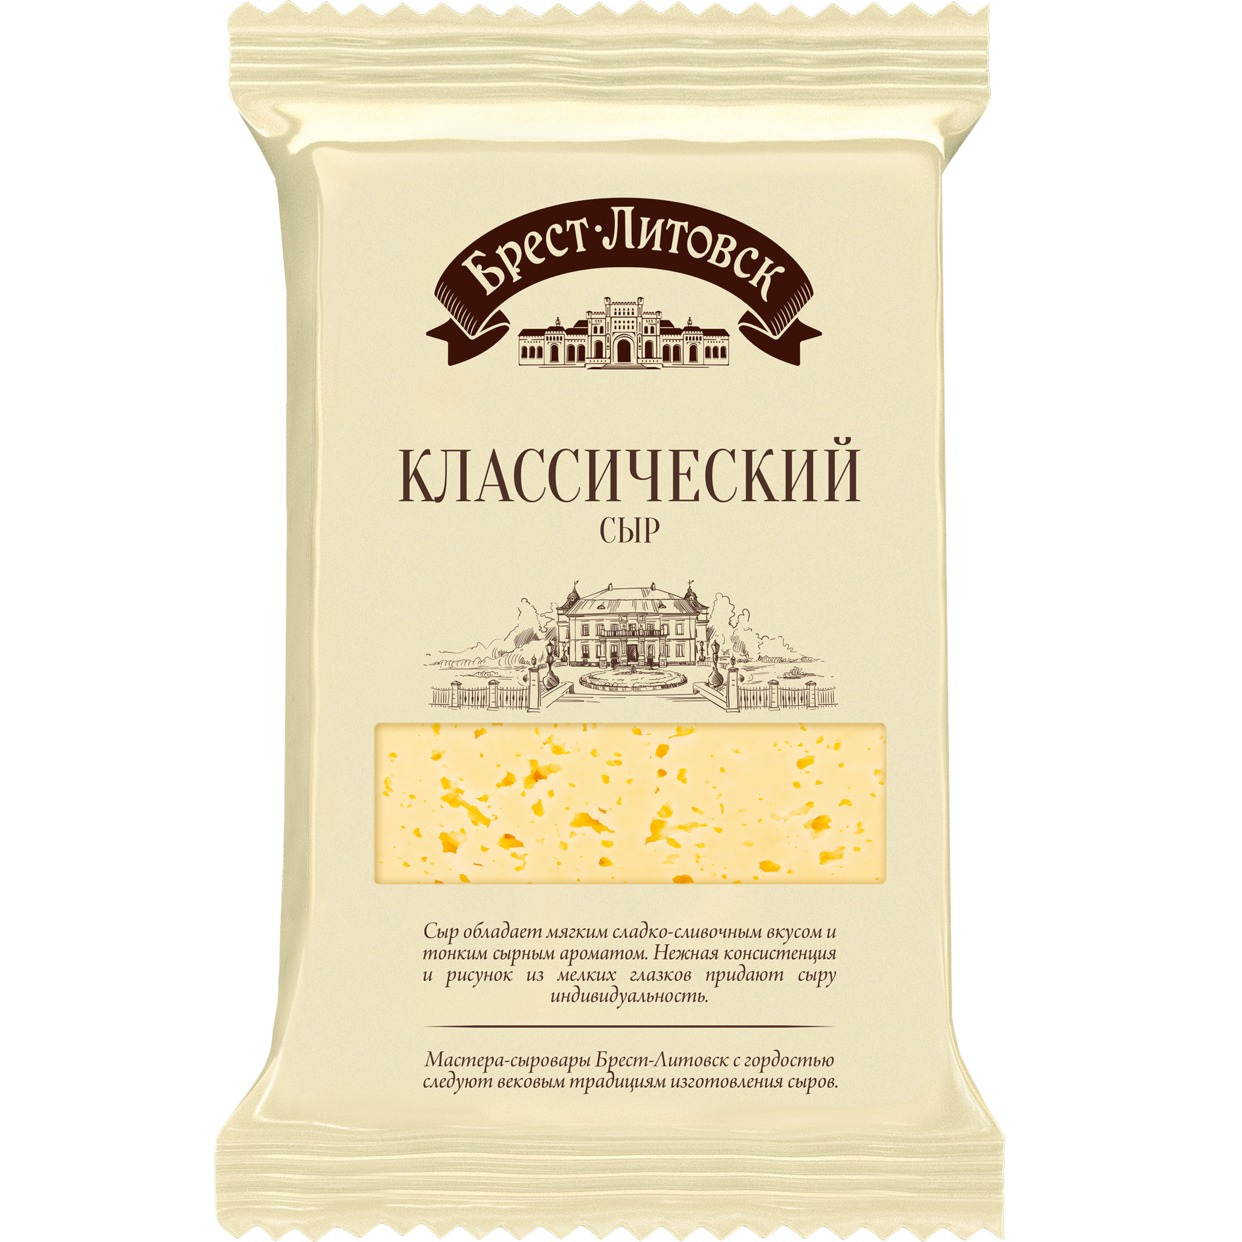 Сыр классический, Брест Литовск, 200 г по акции в Пятерочке